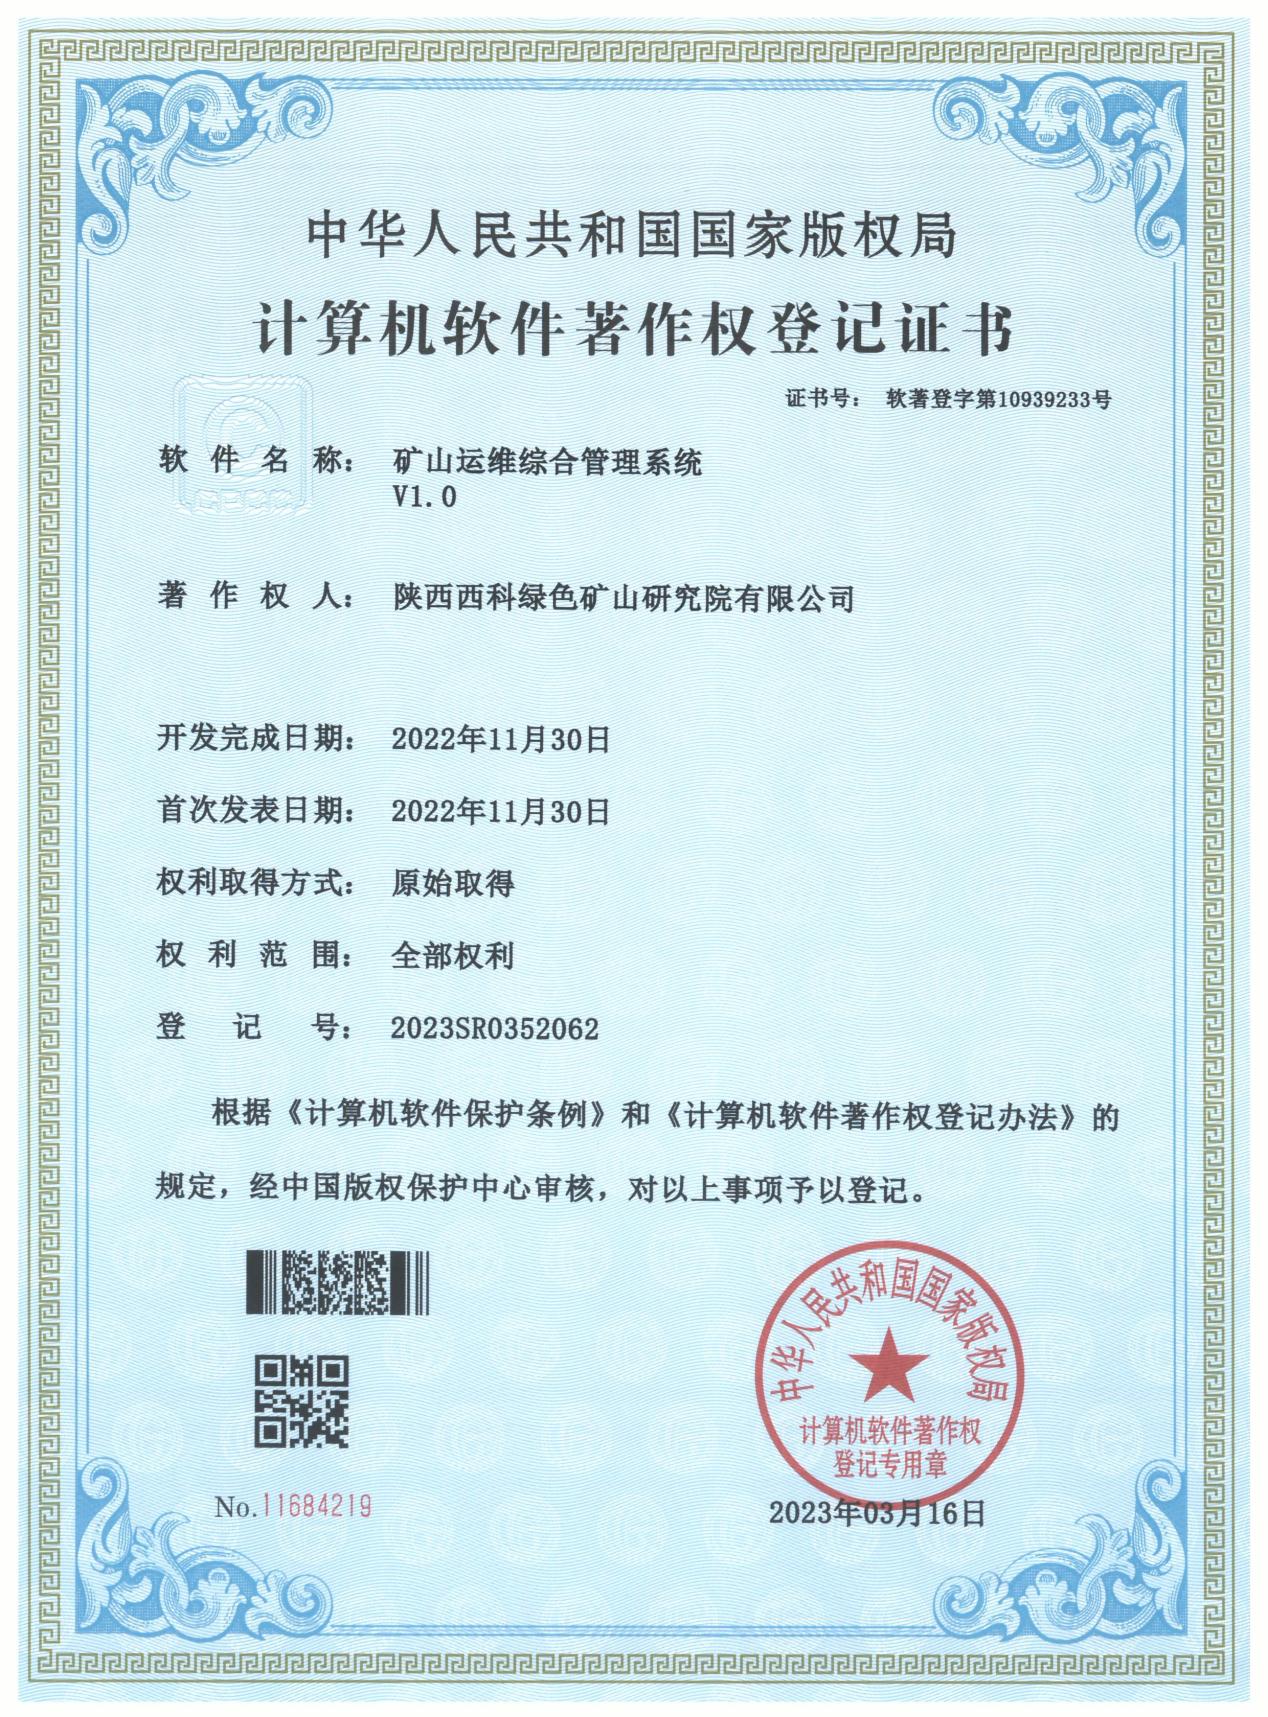 陕西绿色矿山研究院喜获五项软件著作权证书